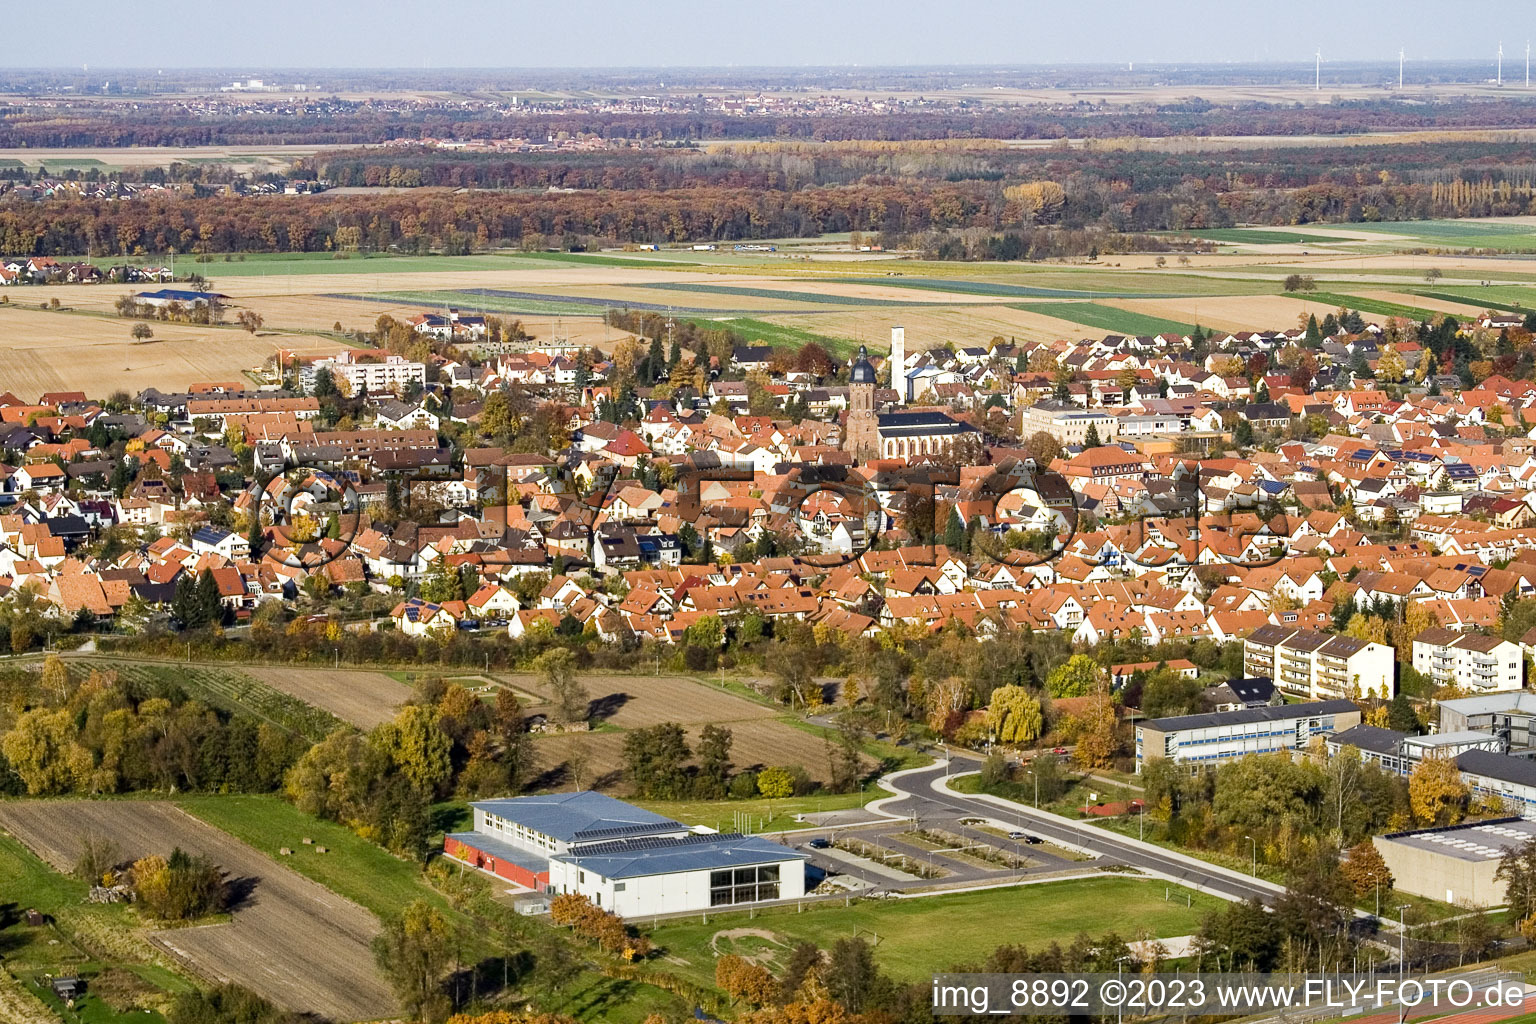 Bienwaldhalle à Kandel dans le département Rhénanie-Palatinat, Allemagne vue du ciel